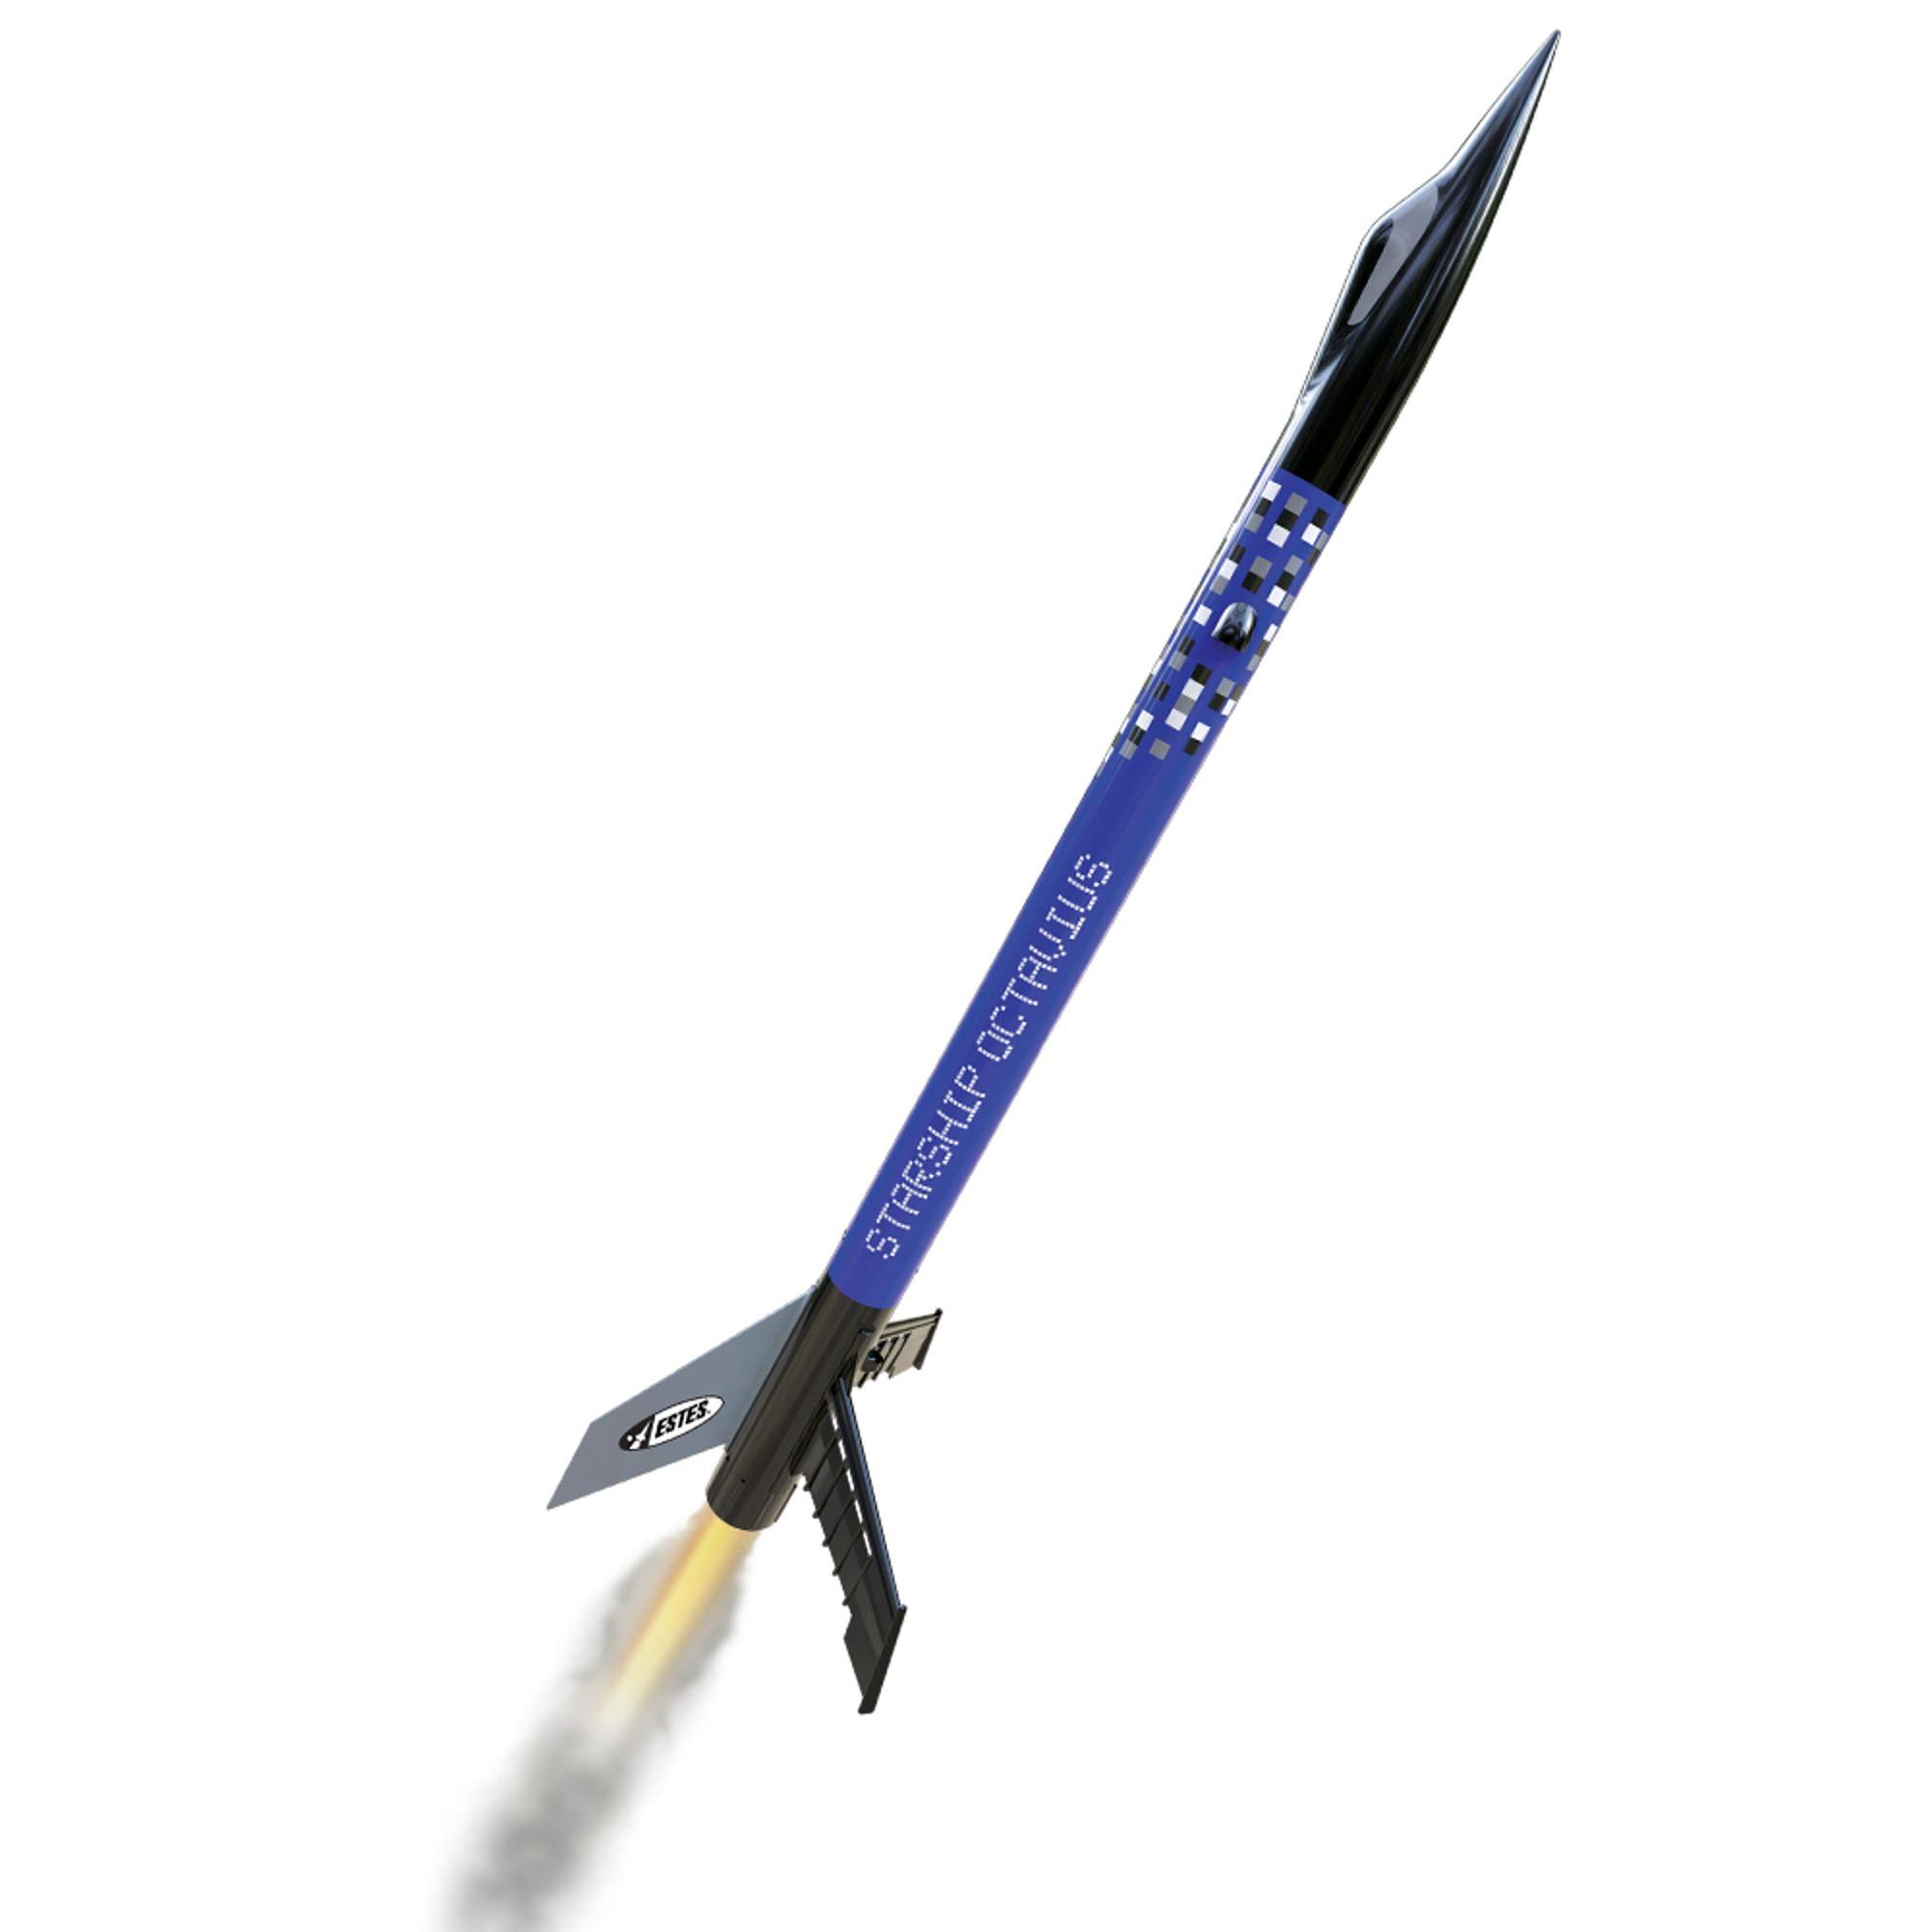 Estes Starship Octavius Rocket Kit Beginner